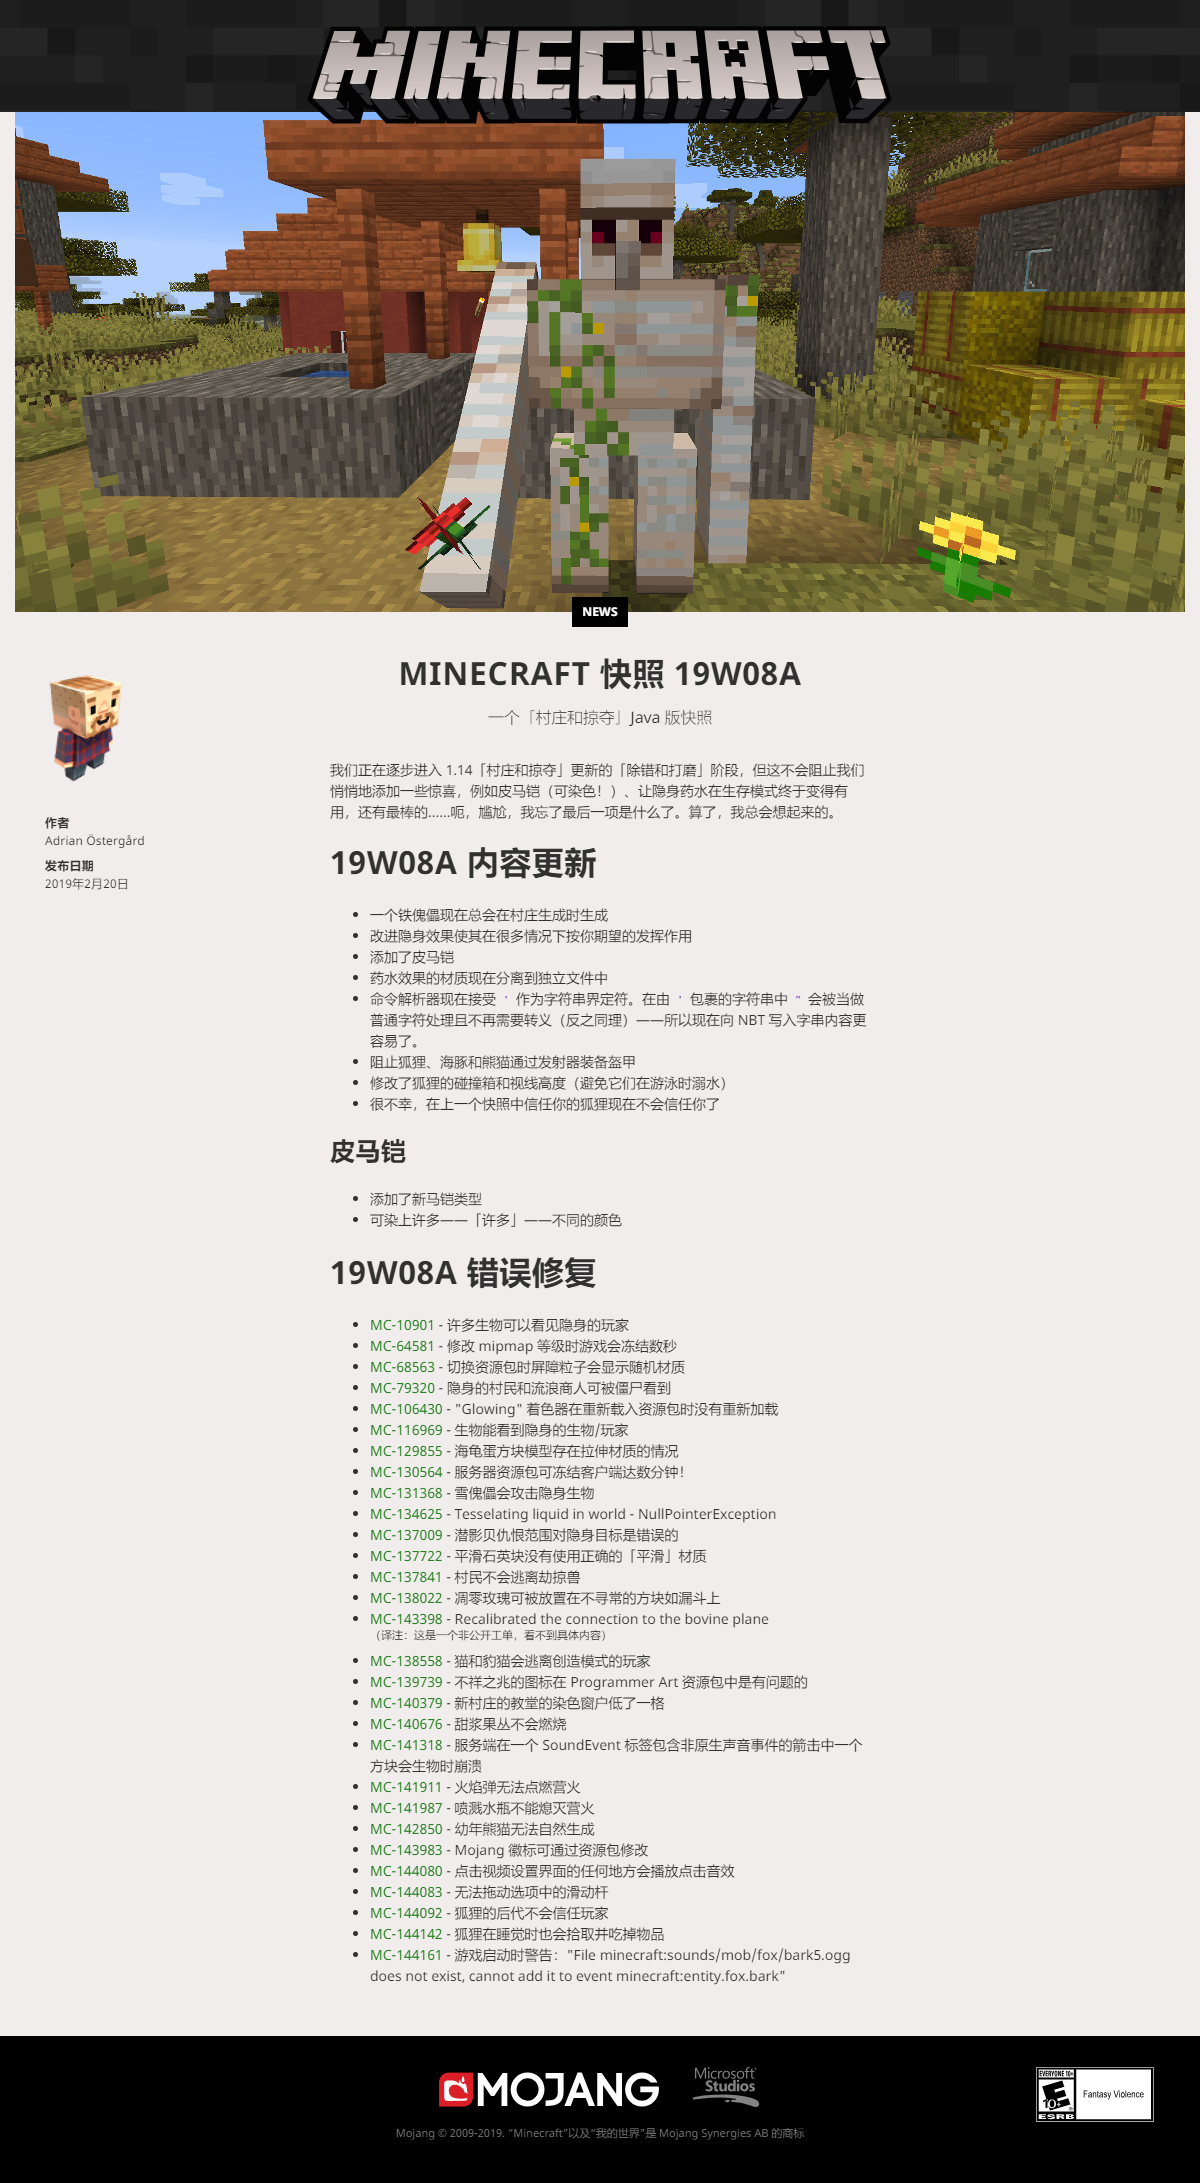 Minecraft 1 14 19w08a B 快照说明 汉化版 皮马铠 隐身效果 毛玉线圈物语社区